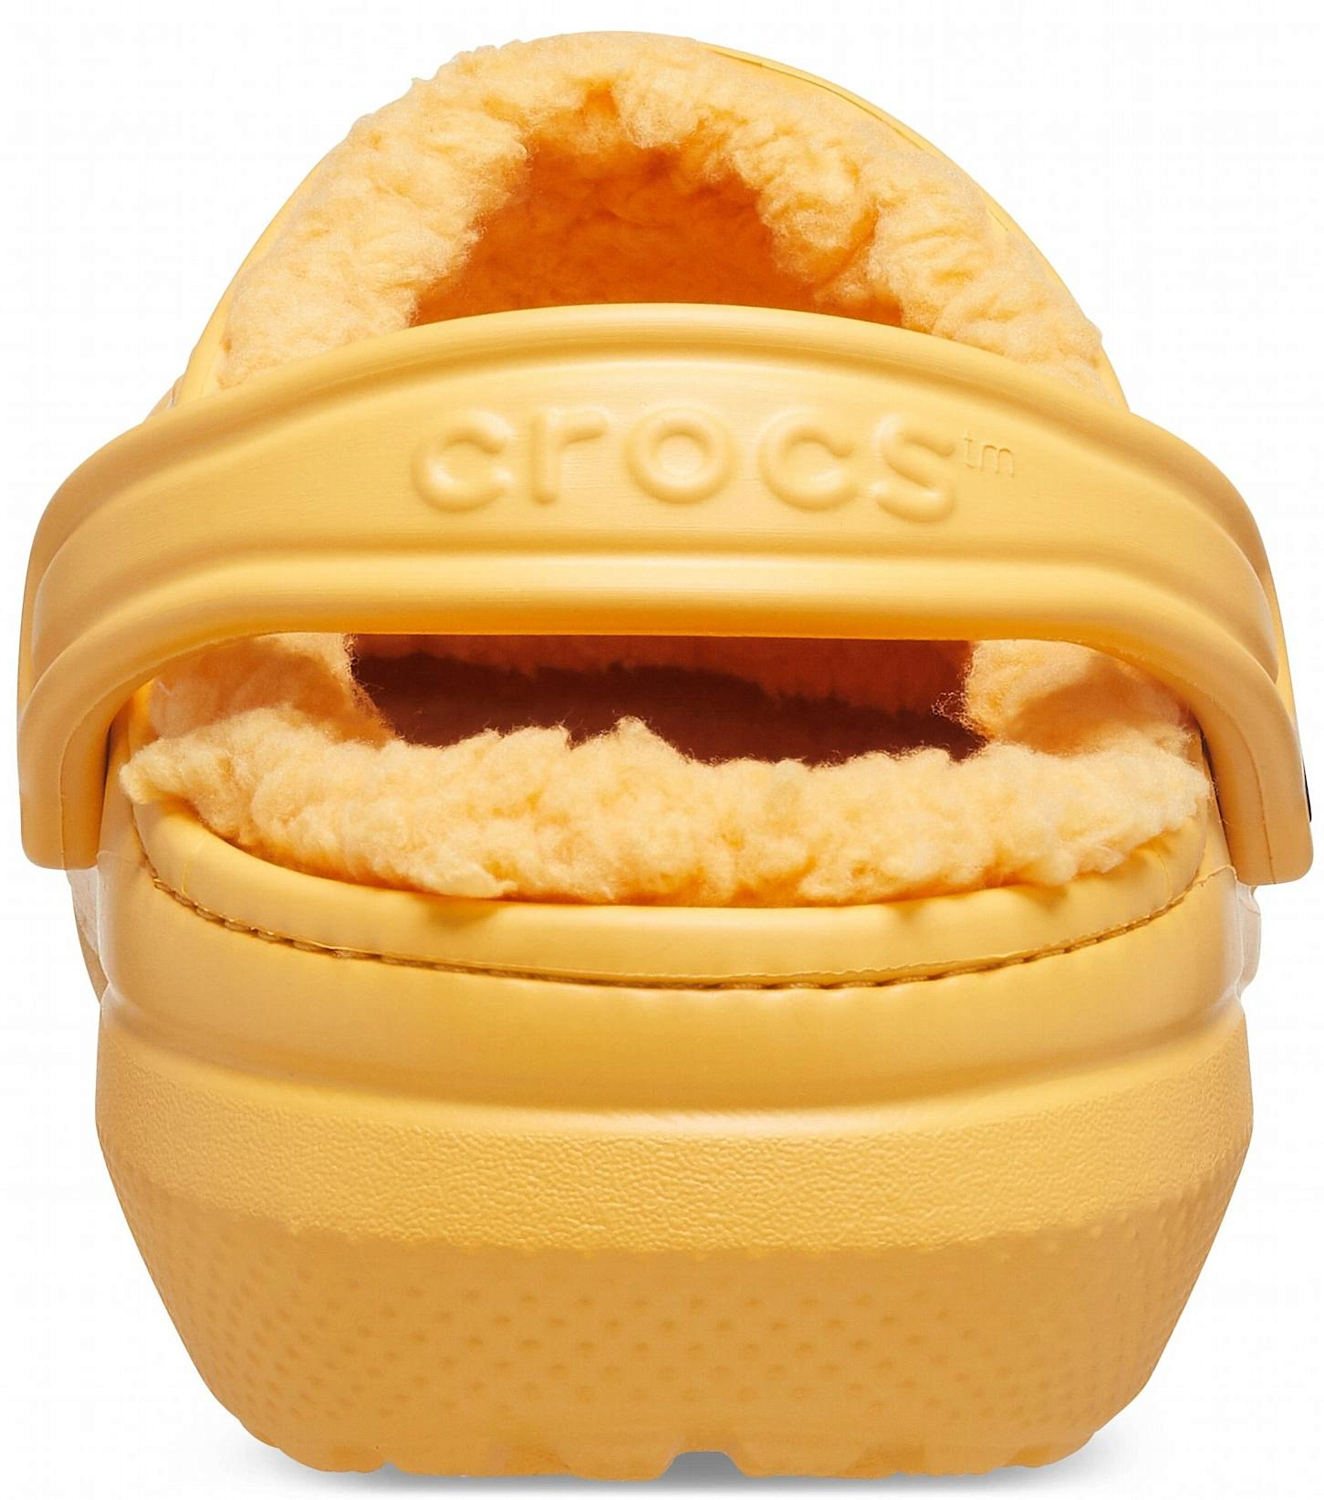 Сандалии Crocs Classic Lined Clog Orange Sorbet